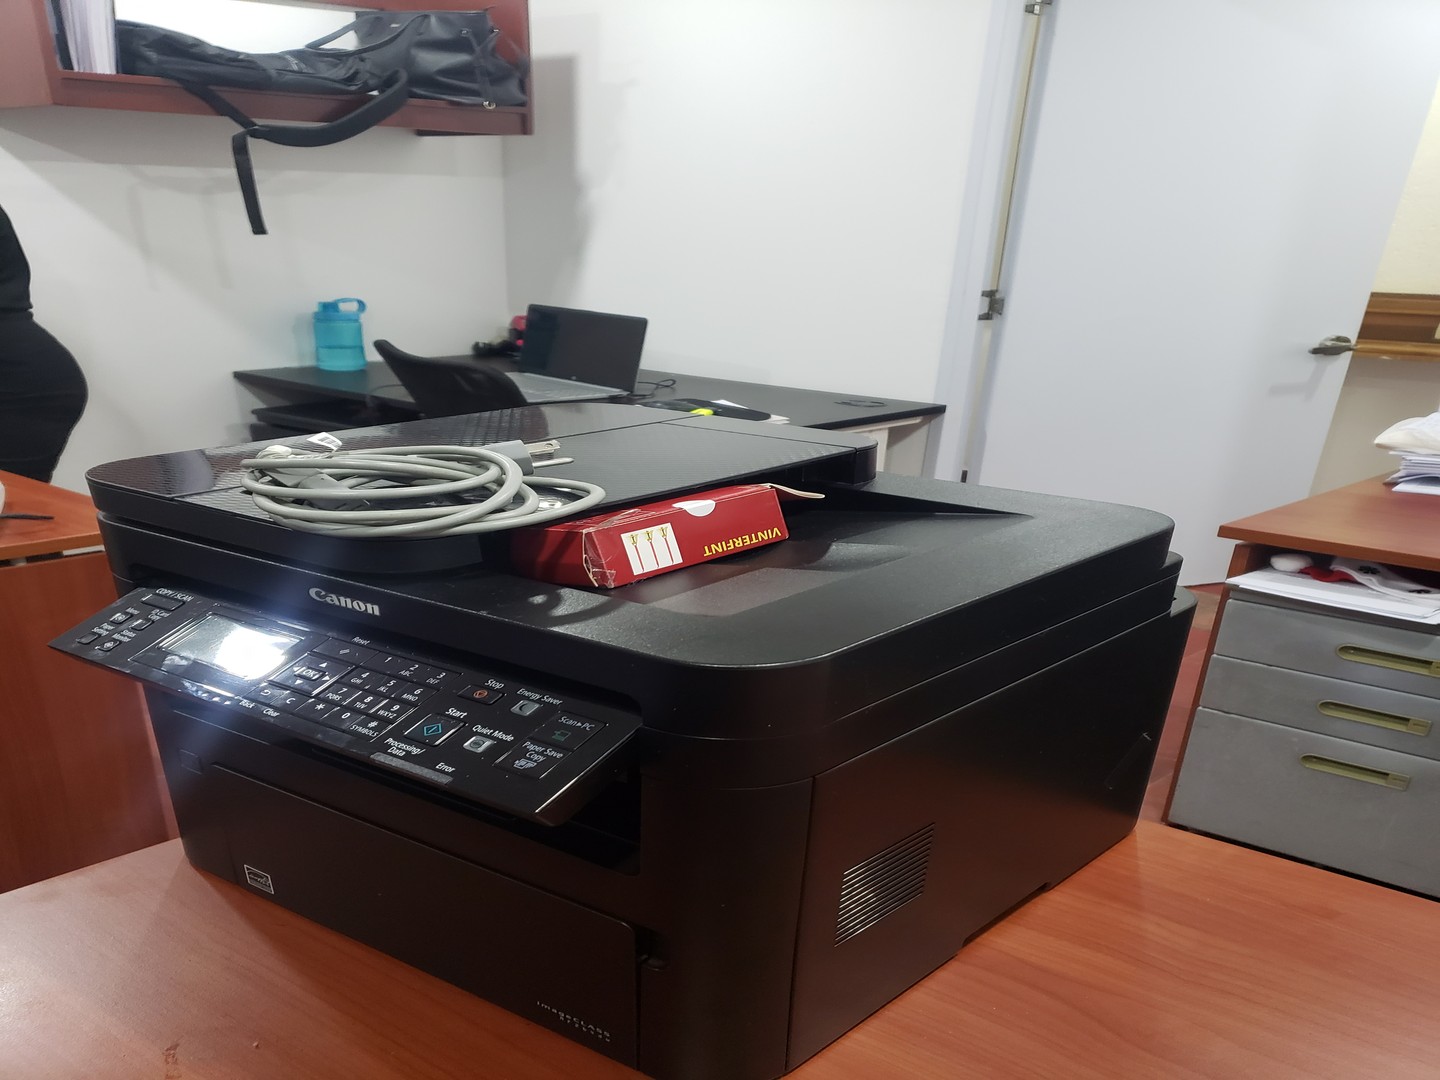 impresoras y scanners - Impresora Canon mff wd 264 multifuncional casi nueva con tonner nuevo incluido 0